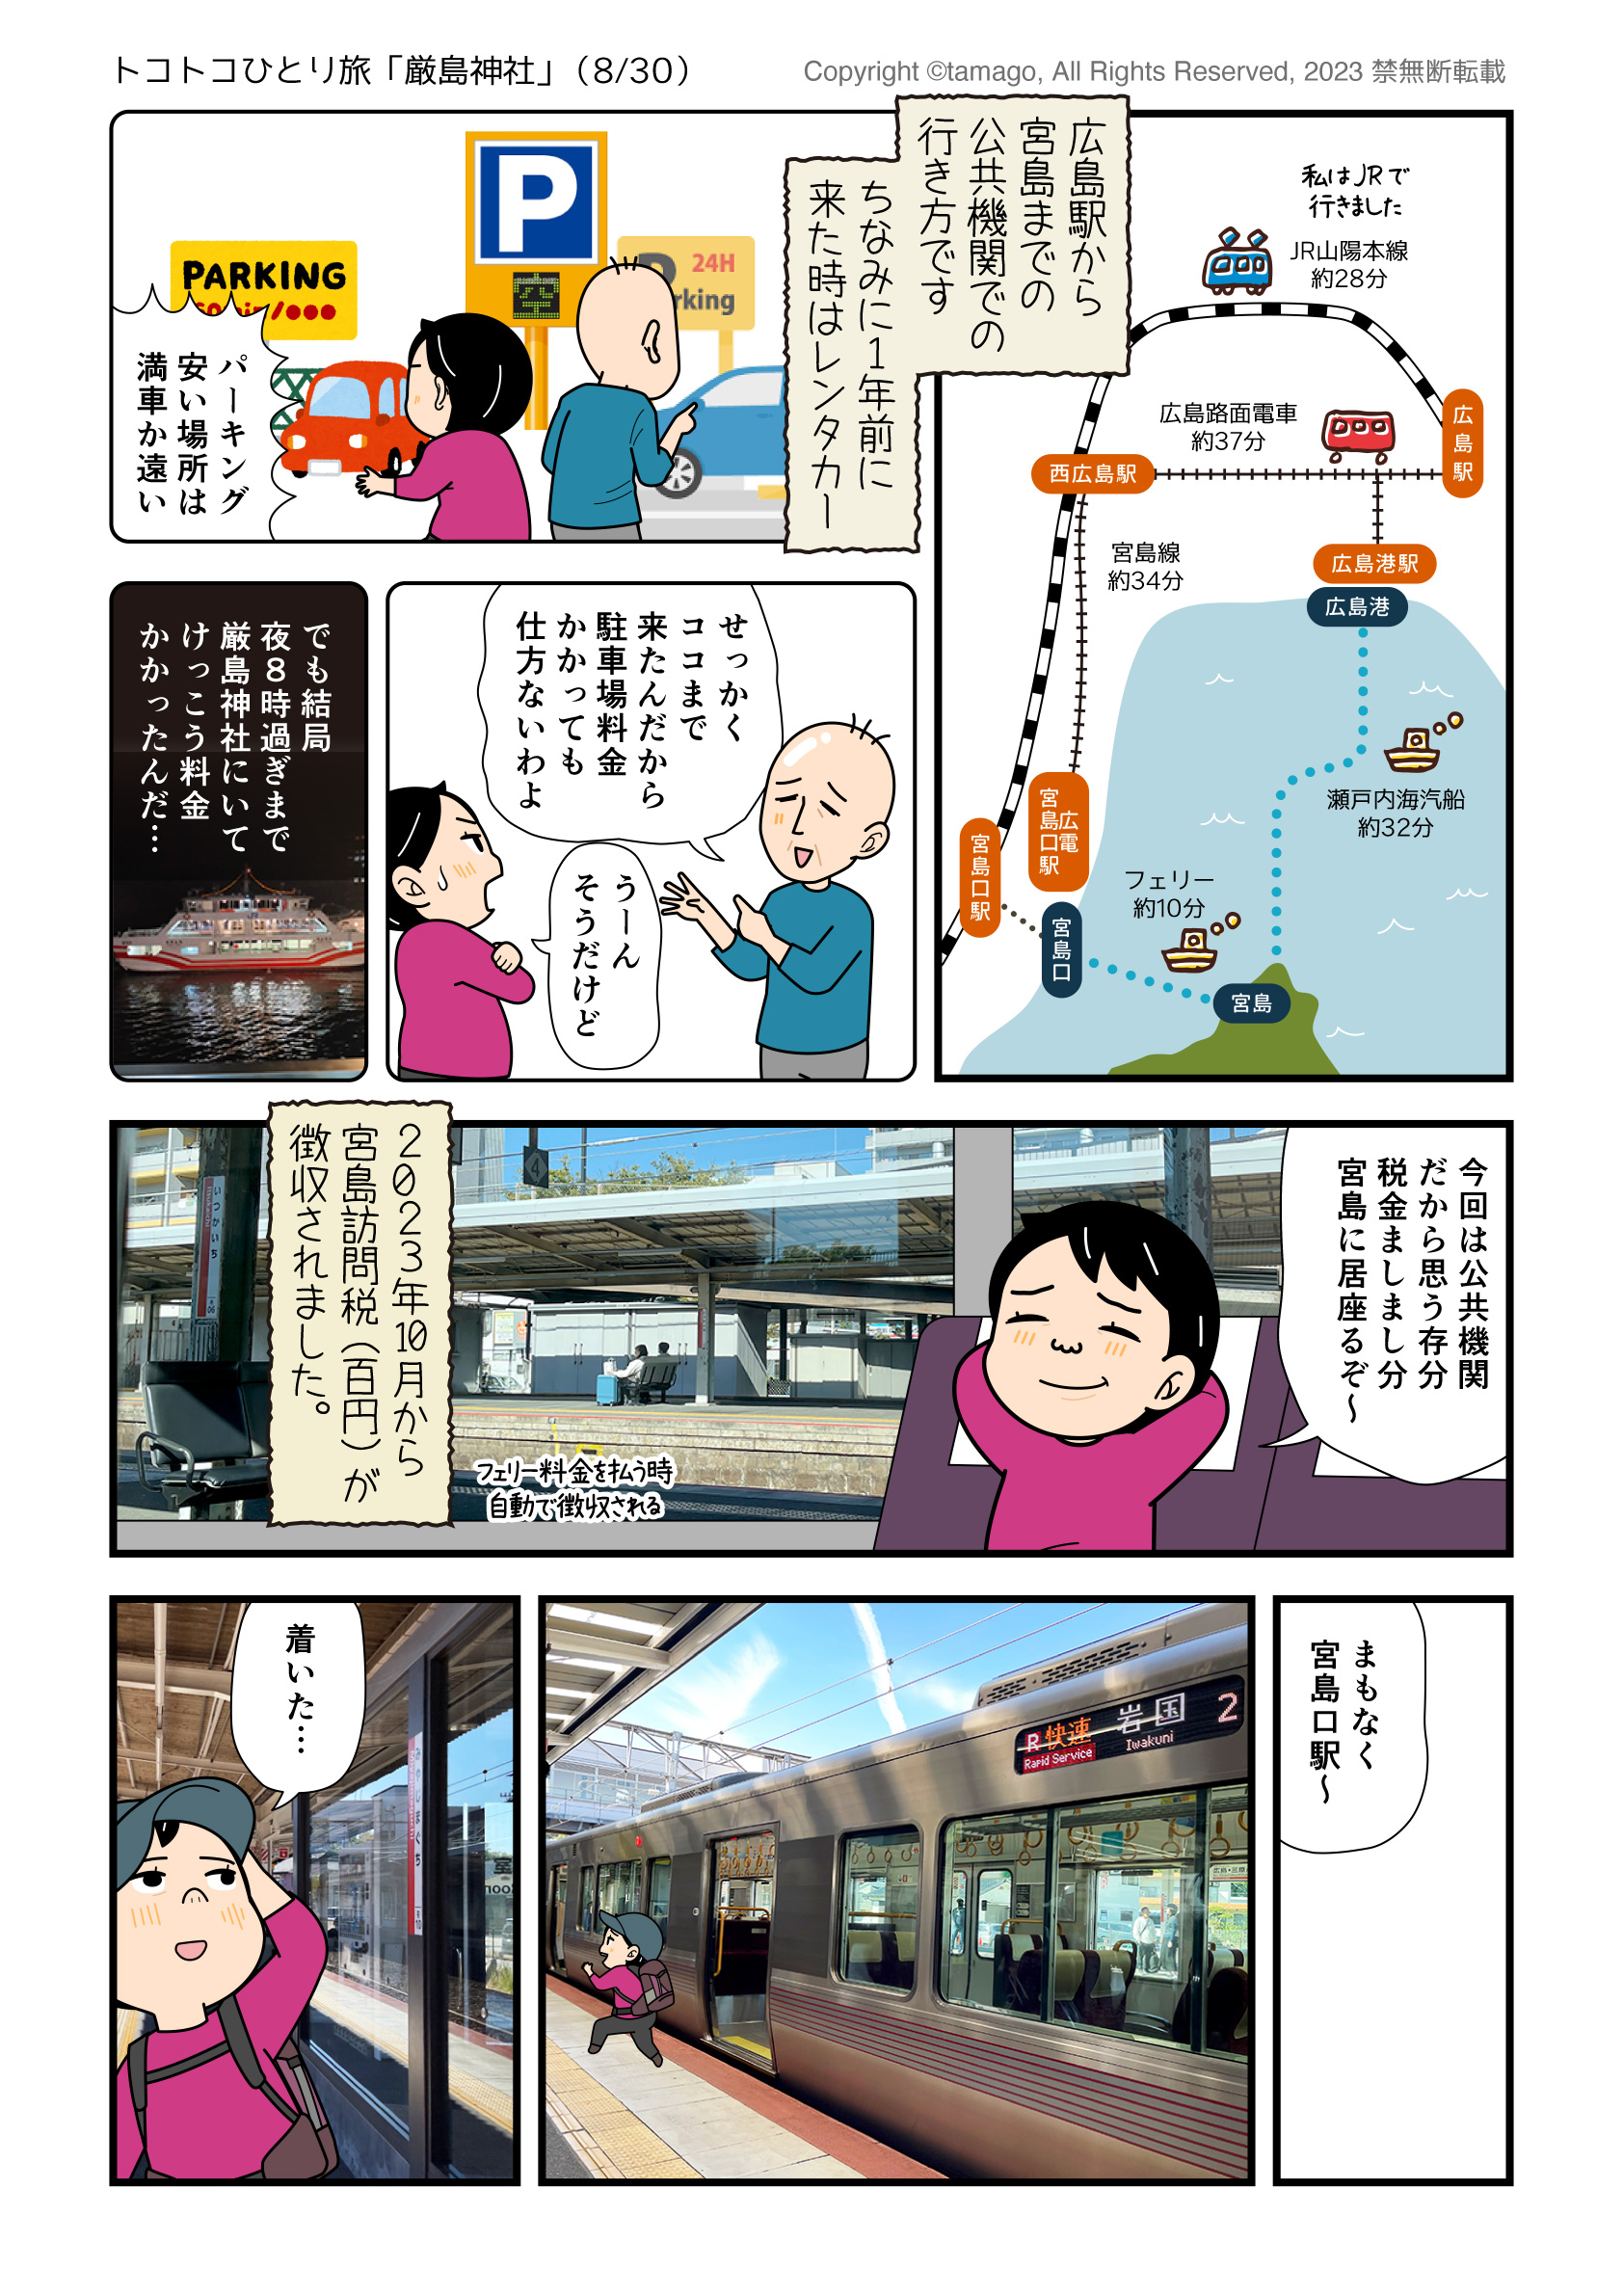 広島駅から宮島口までのアクセスを図解する旅漫画